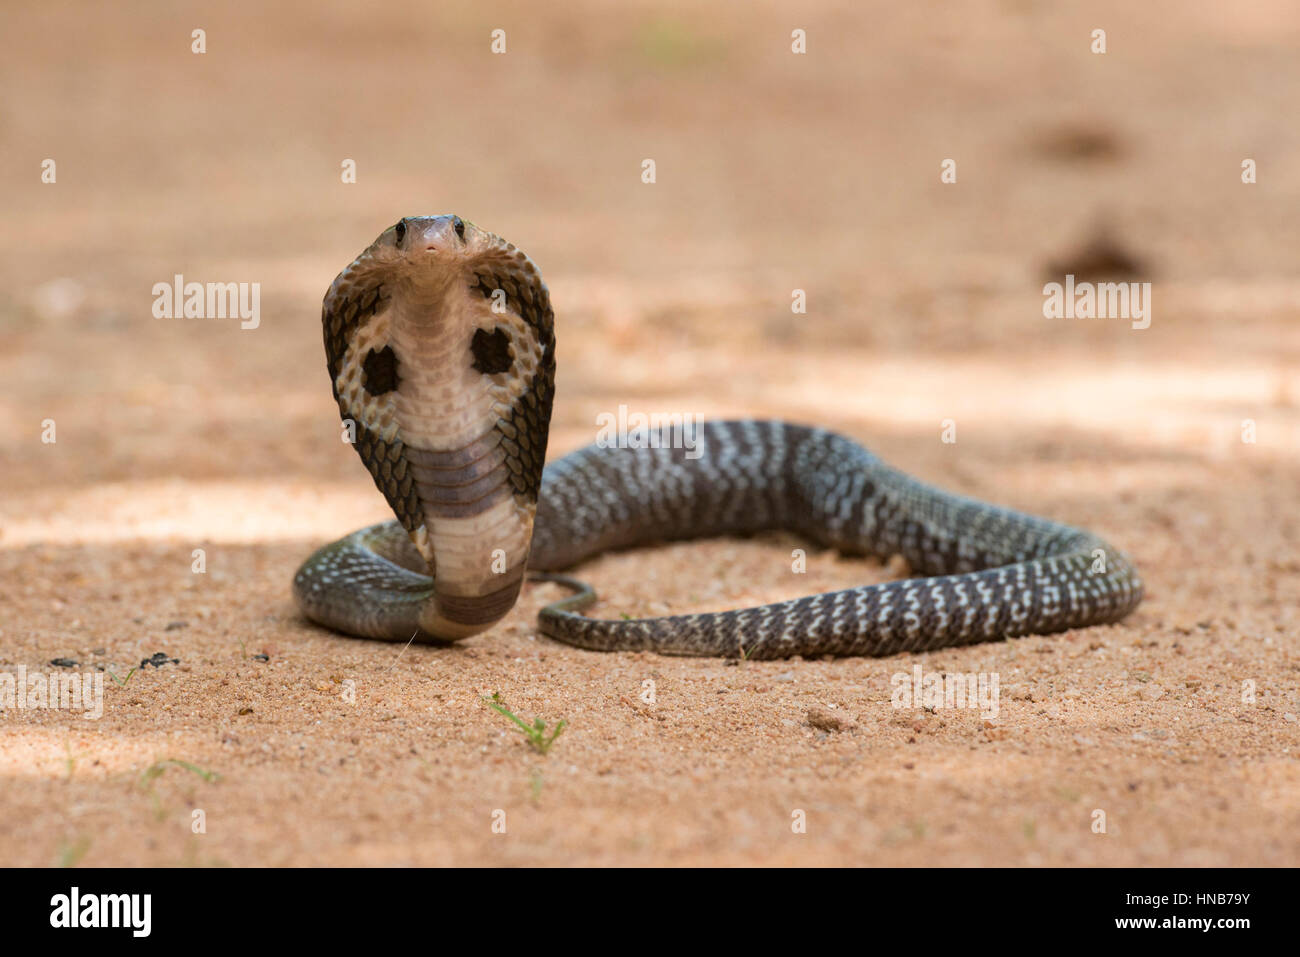 Indian cobra or Spectacled cobra, Naja naja, Sri Lanka Stock Photo